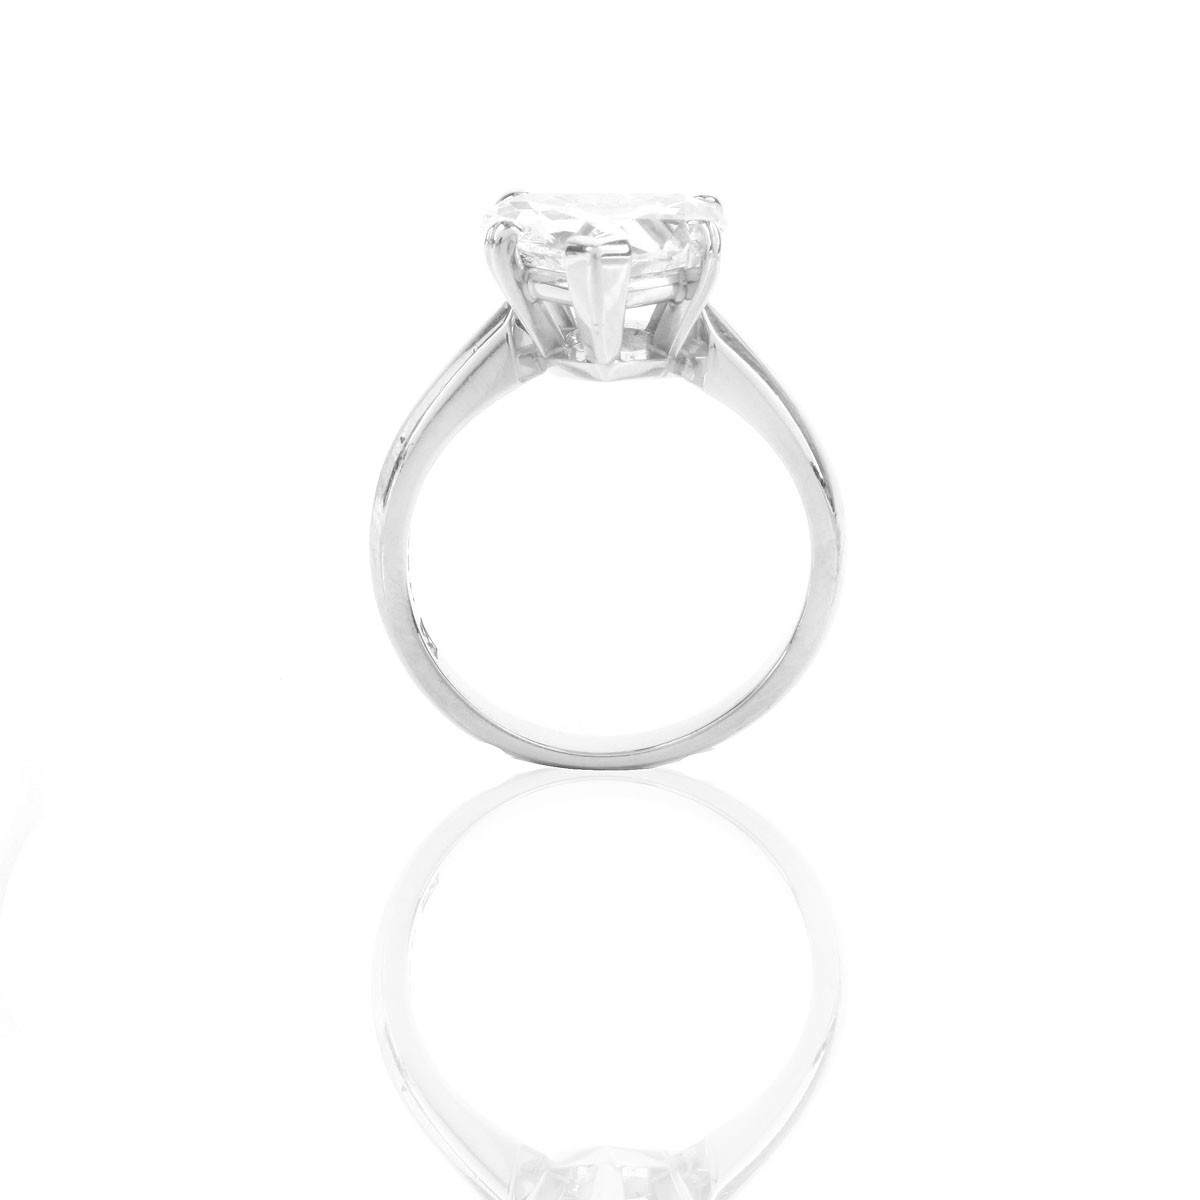 GIA Certified 2.53 Carat Diamond Engagement Ring - Image 3 of 8